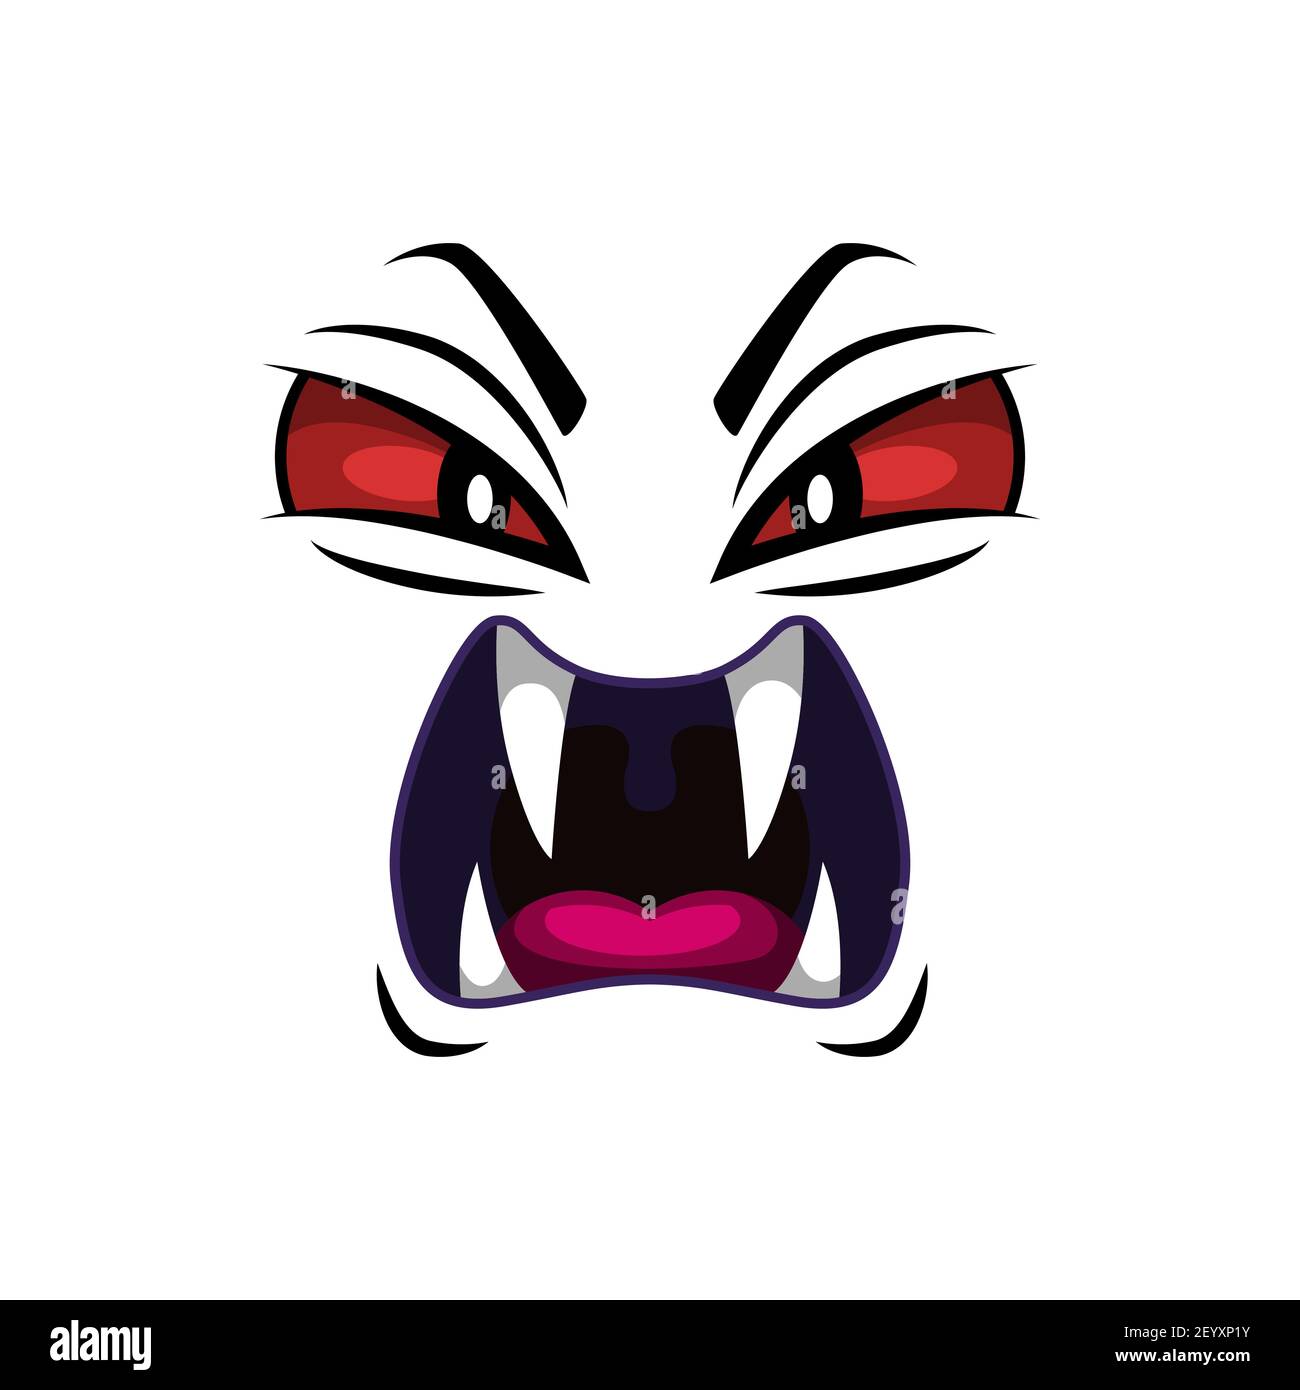 Icône de vecteur isolé face de monstre, emoji de bande dessinée du démon en colère, émotion de créature effrayante d'Halloween. Un diable arnaquant avec des fangs pointus et des yeux rouges créeppés Illustration de Vecteur